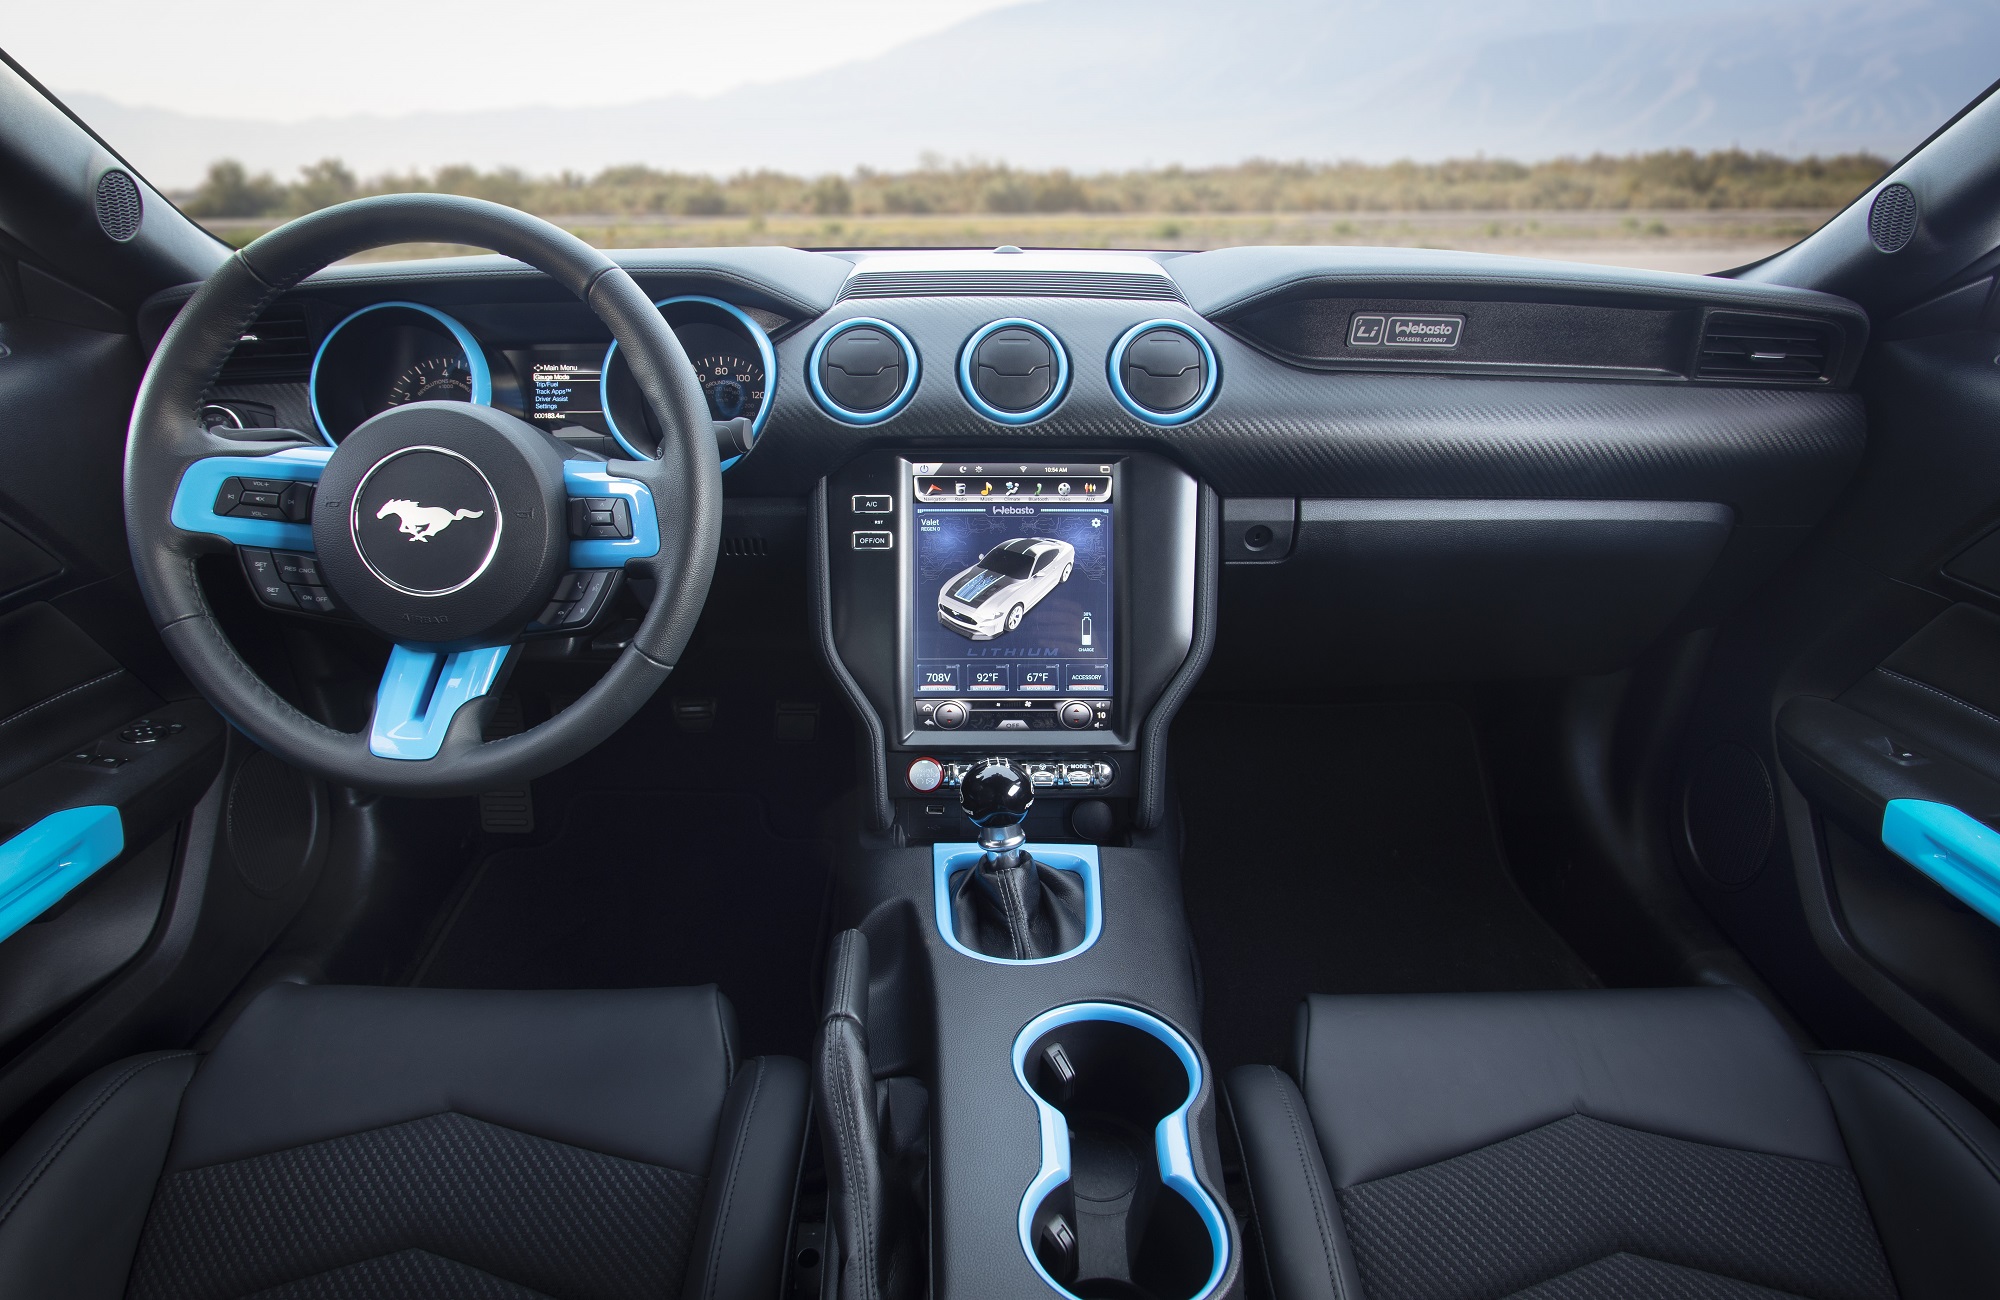 Painel do Mustang elétrico tem detalhes azuis no volante, nos instrumentos e nas saídas de ar, além de tela central de 10 polegadas